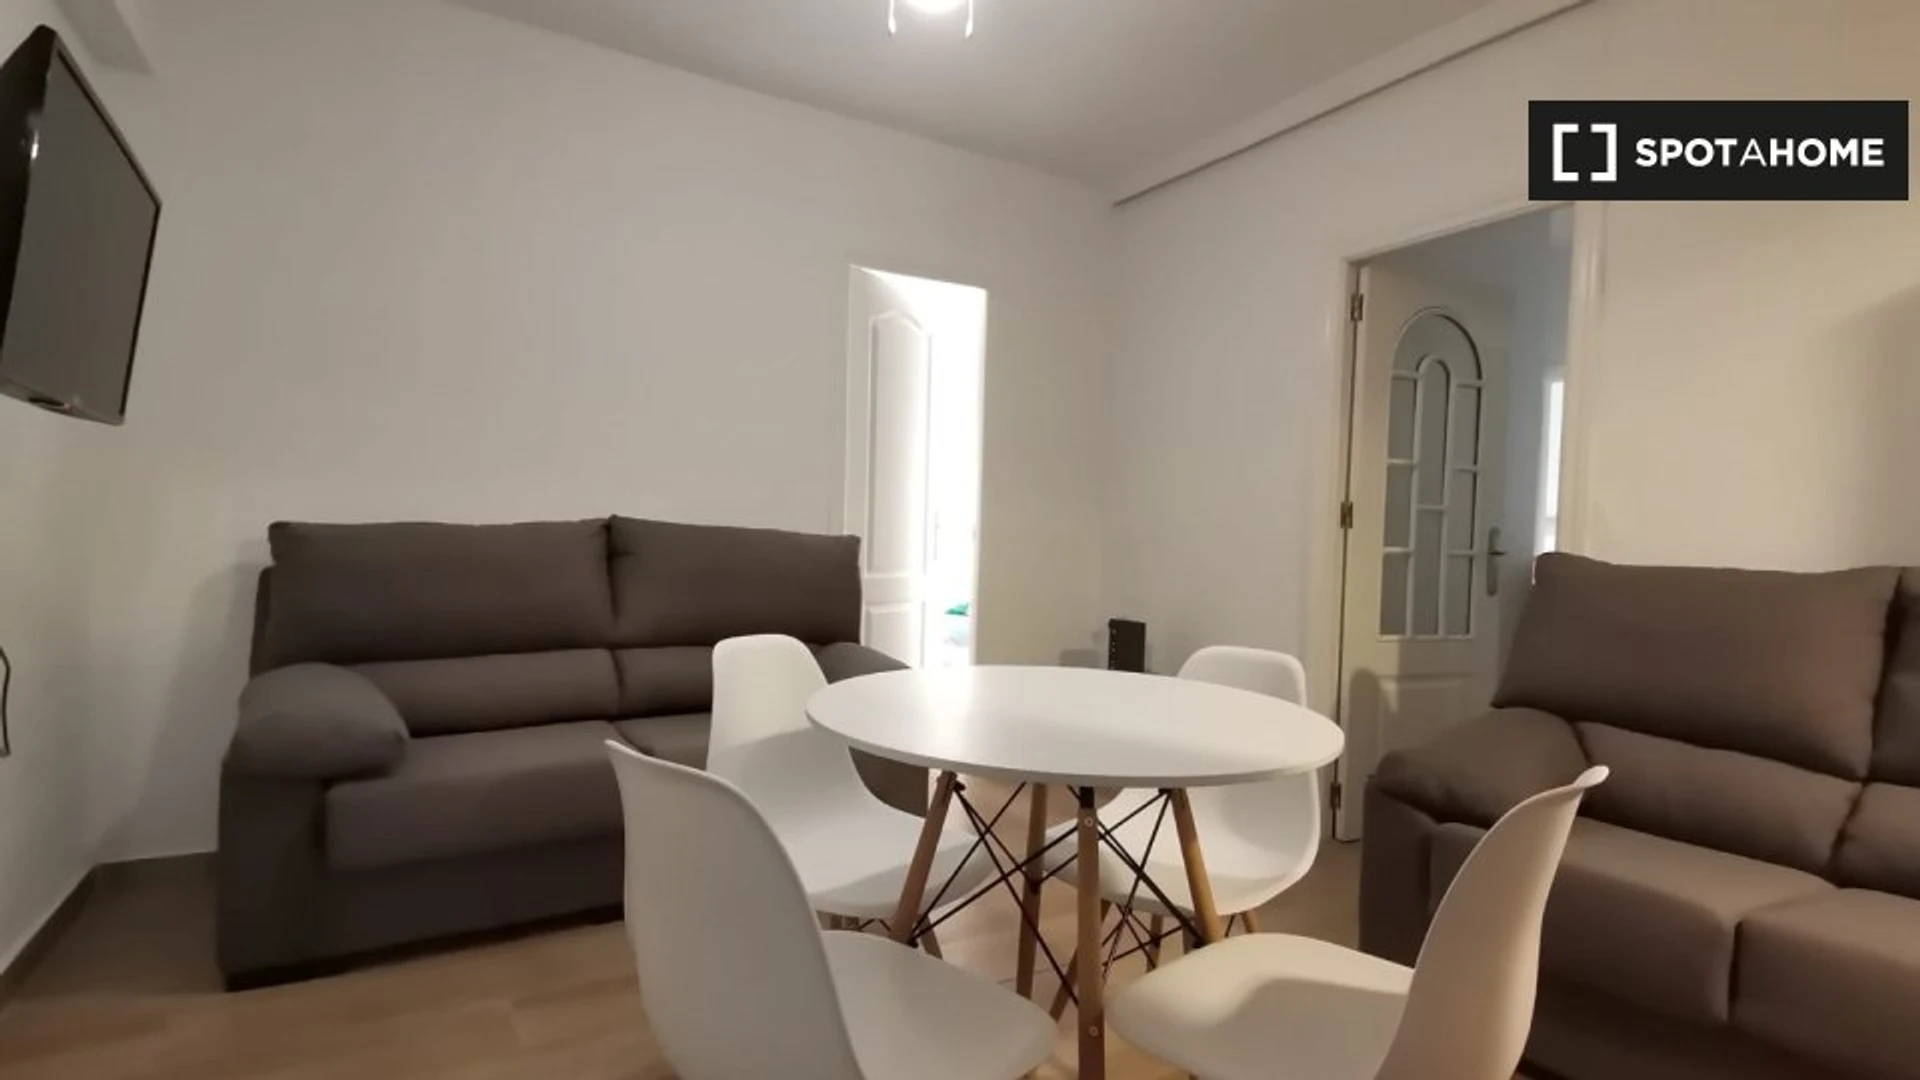 Quarto para alugar num apartamento partilhado em Córdova